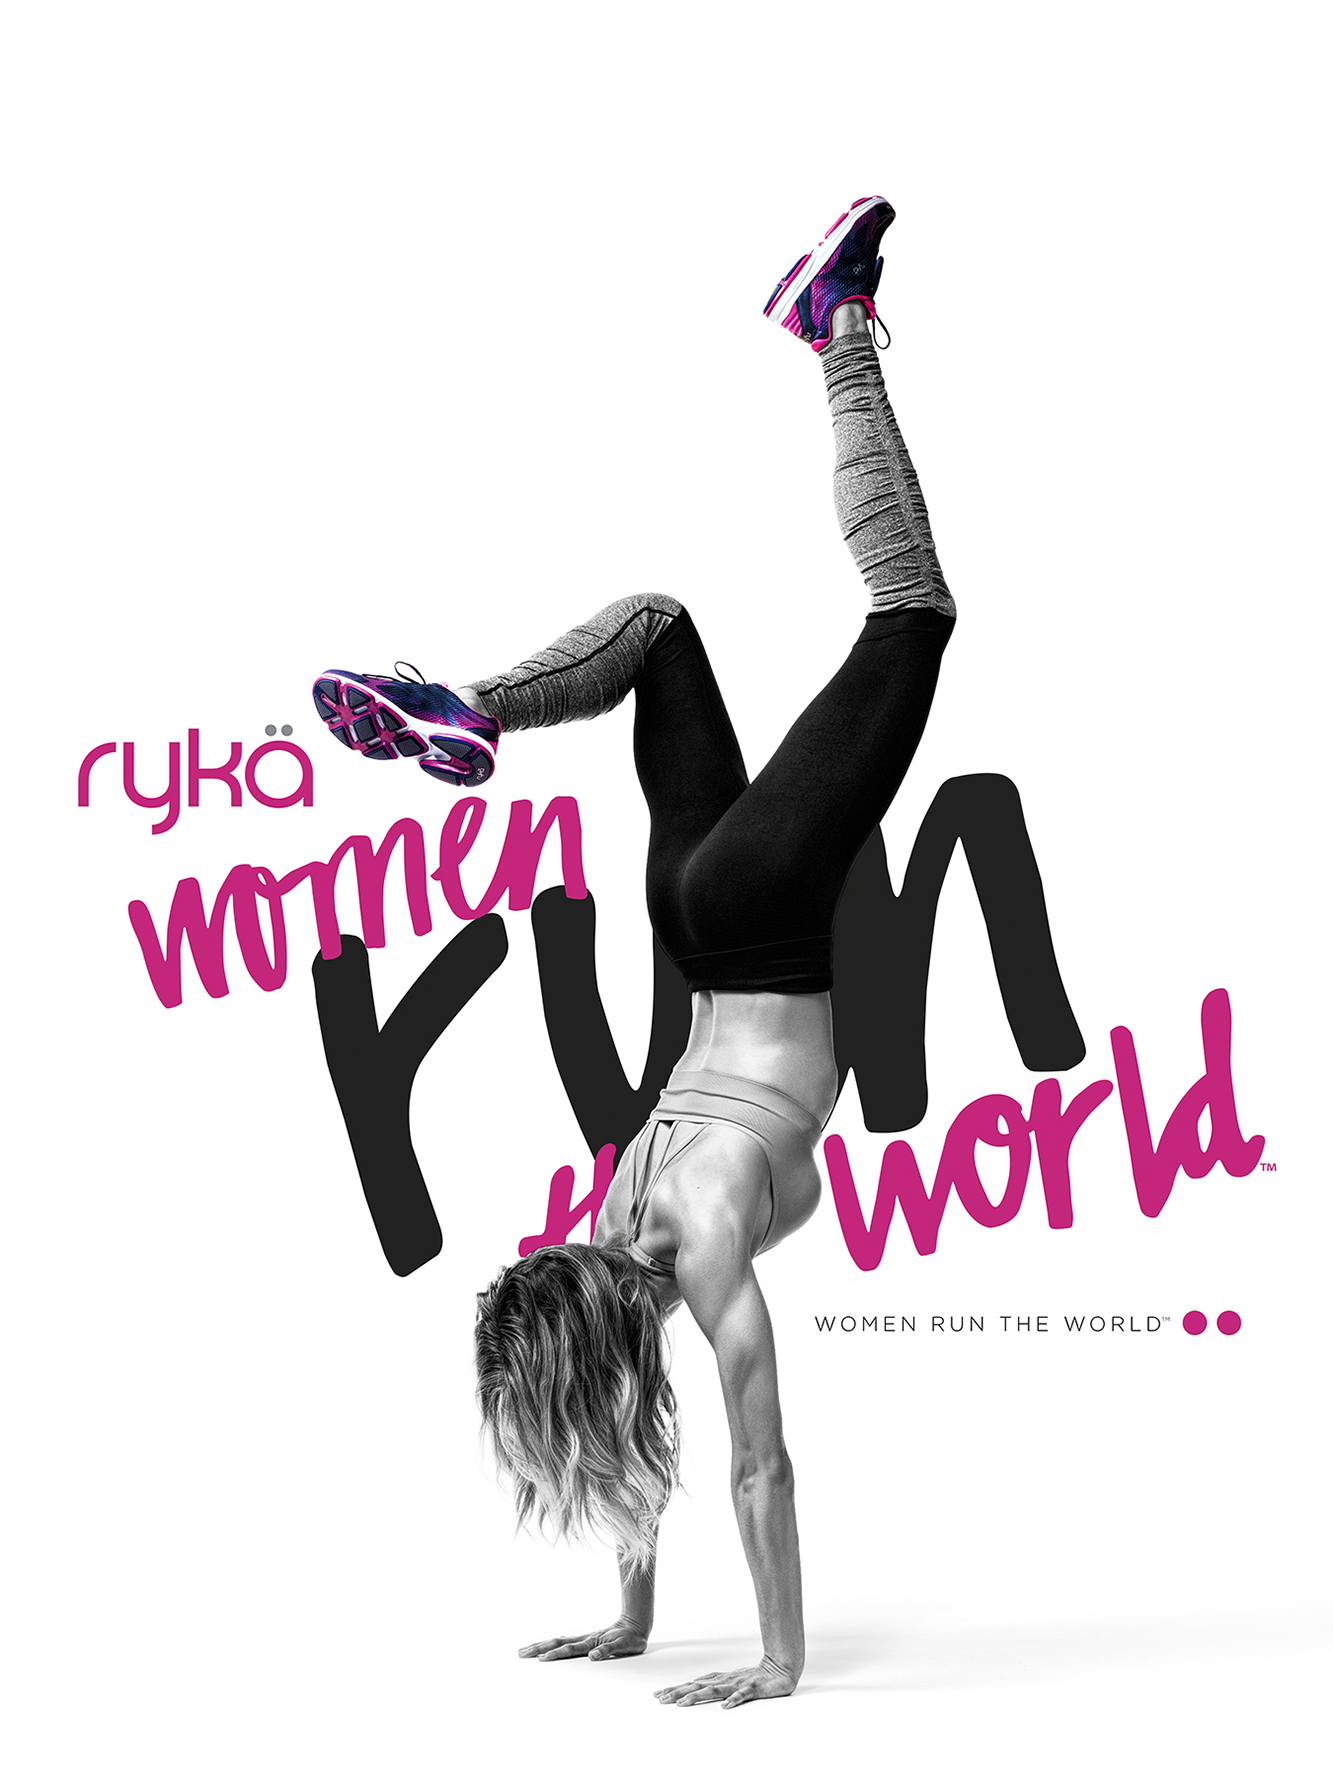 Rÿka "Women Run the World" Campaign